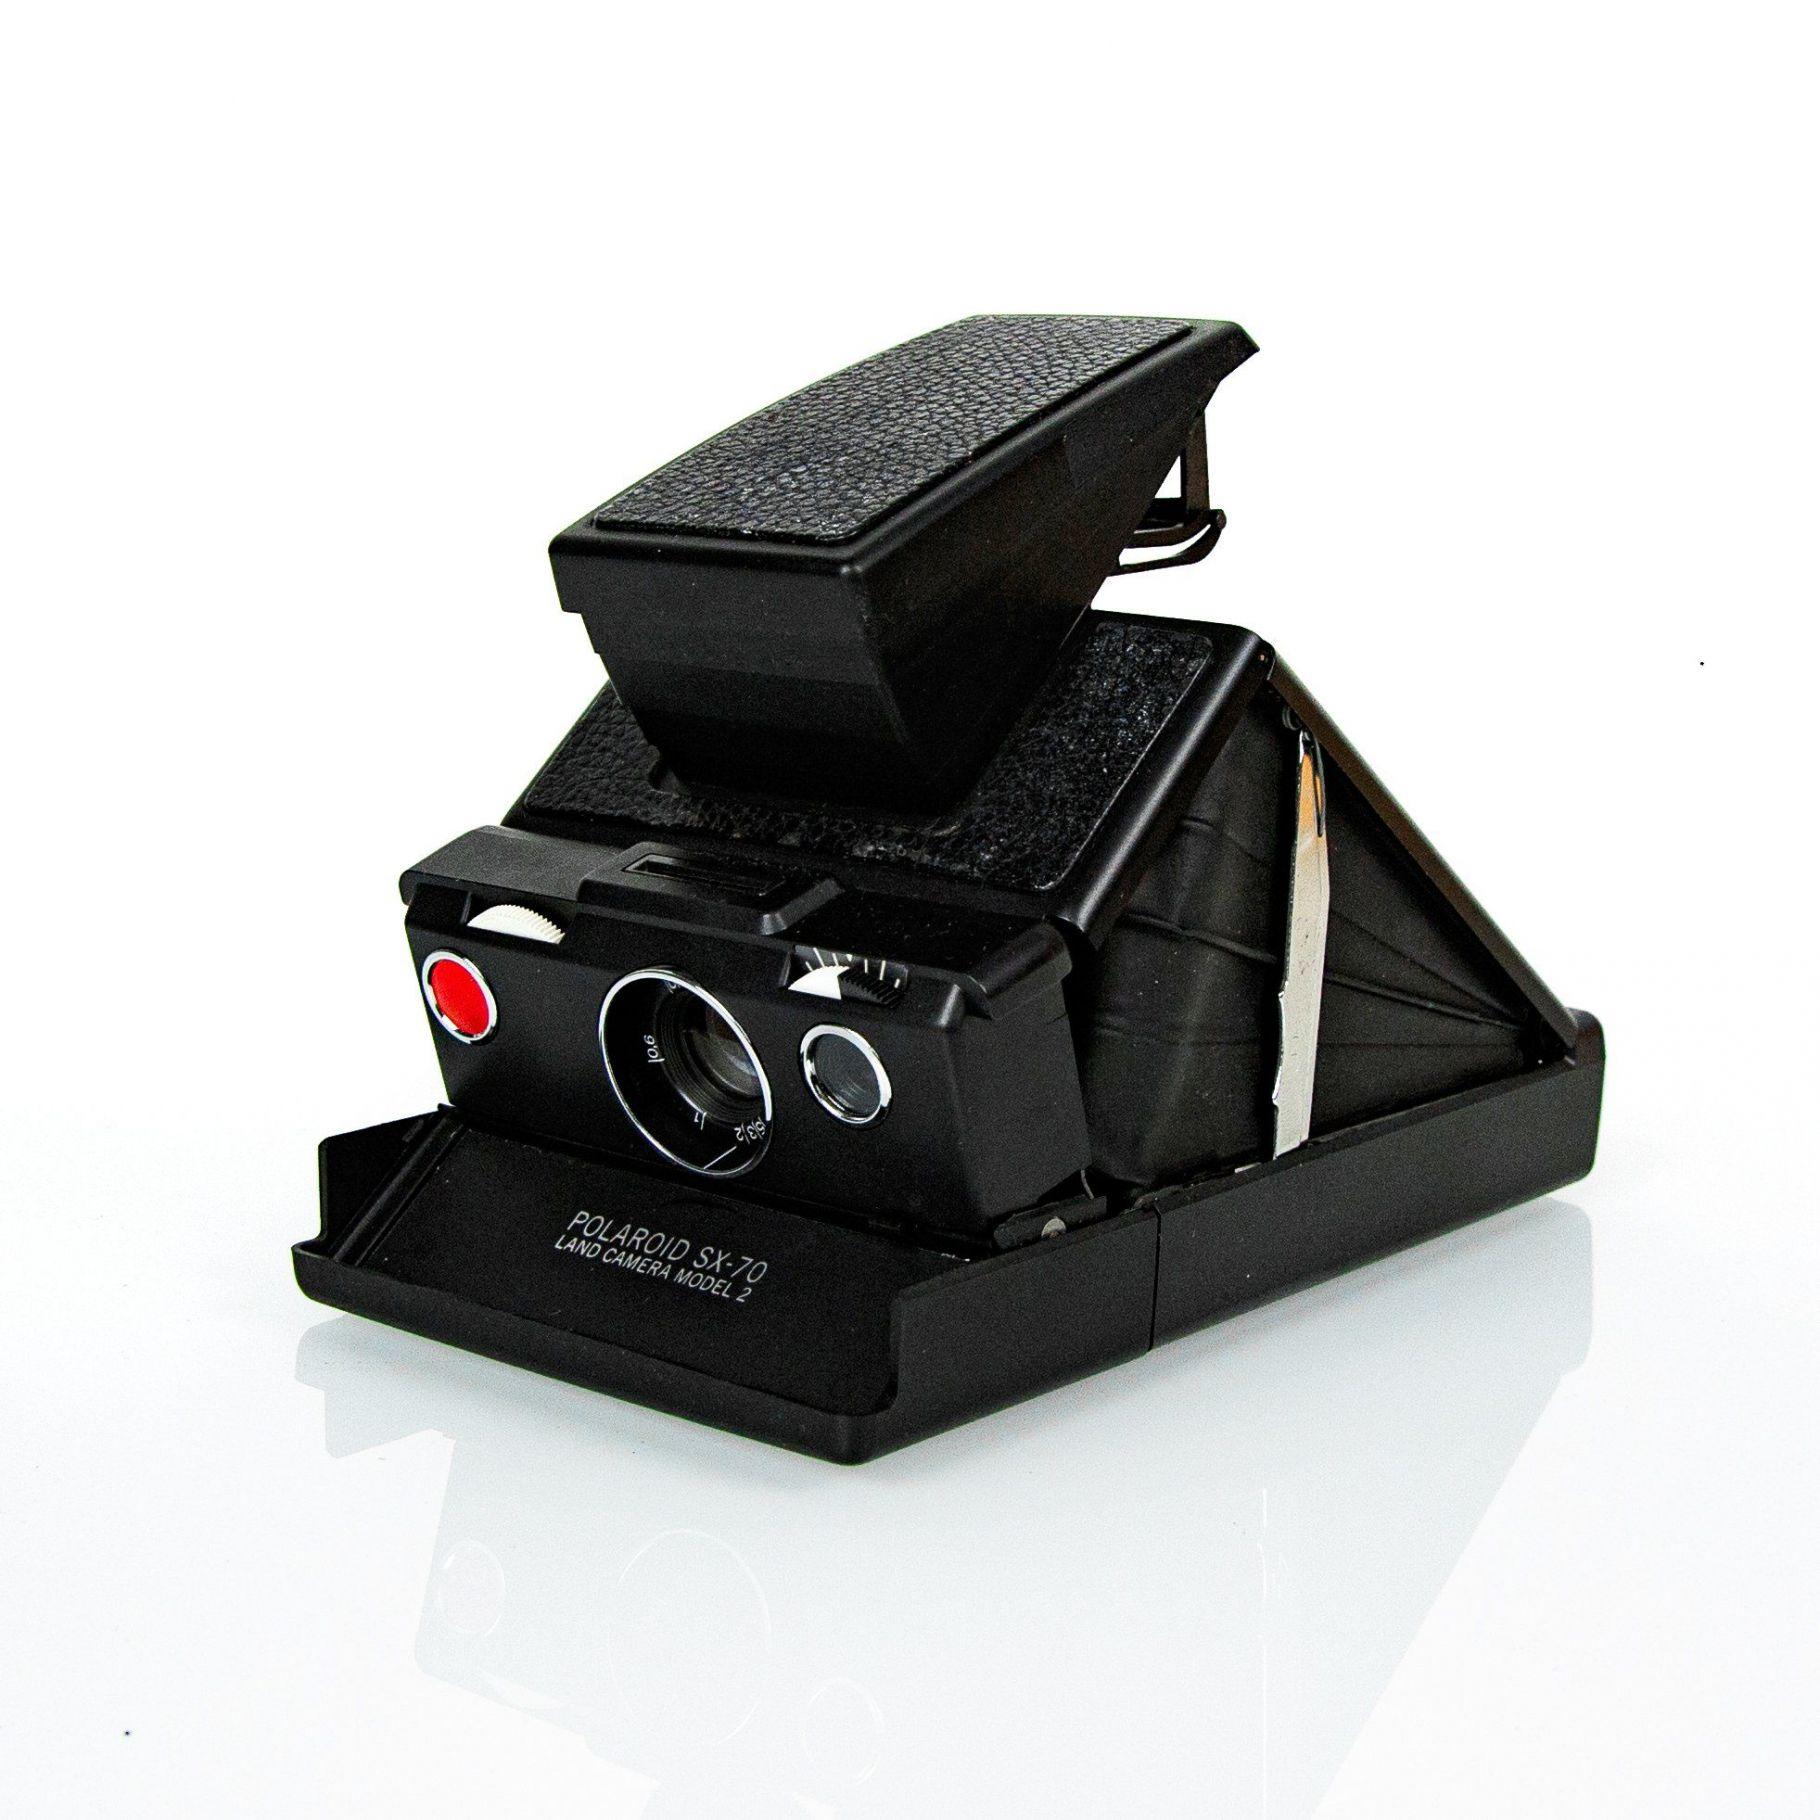 Polaroid SX-70 Land Camera with accessories – Futura